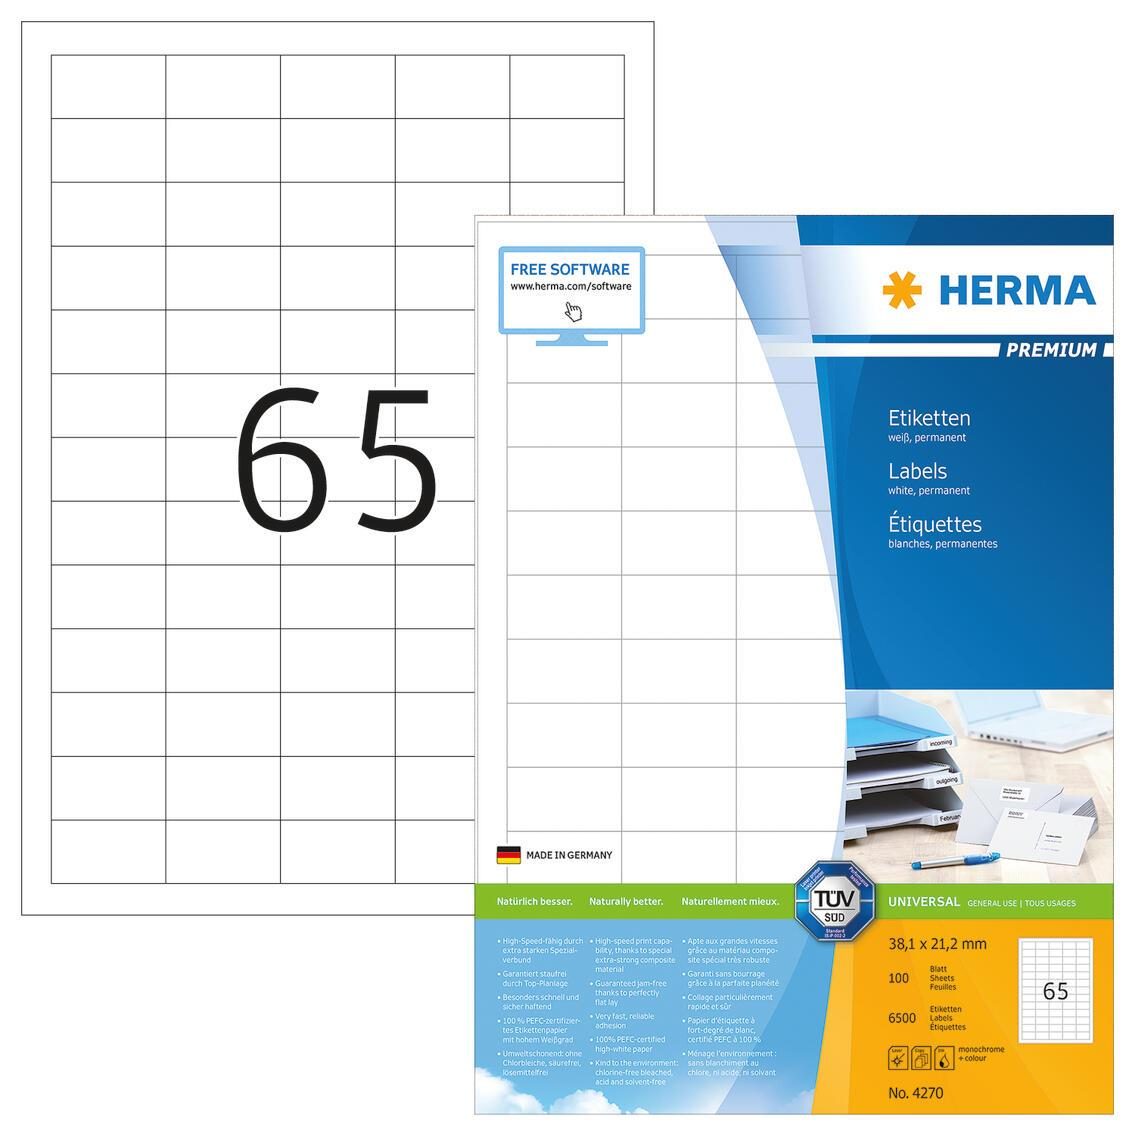 HERMA Universaletiketten 4270 38,1 x 21,2 mm weiß von HERMA